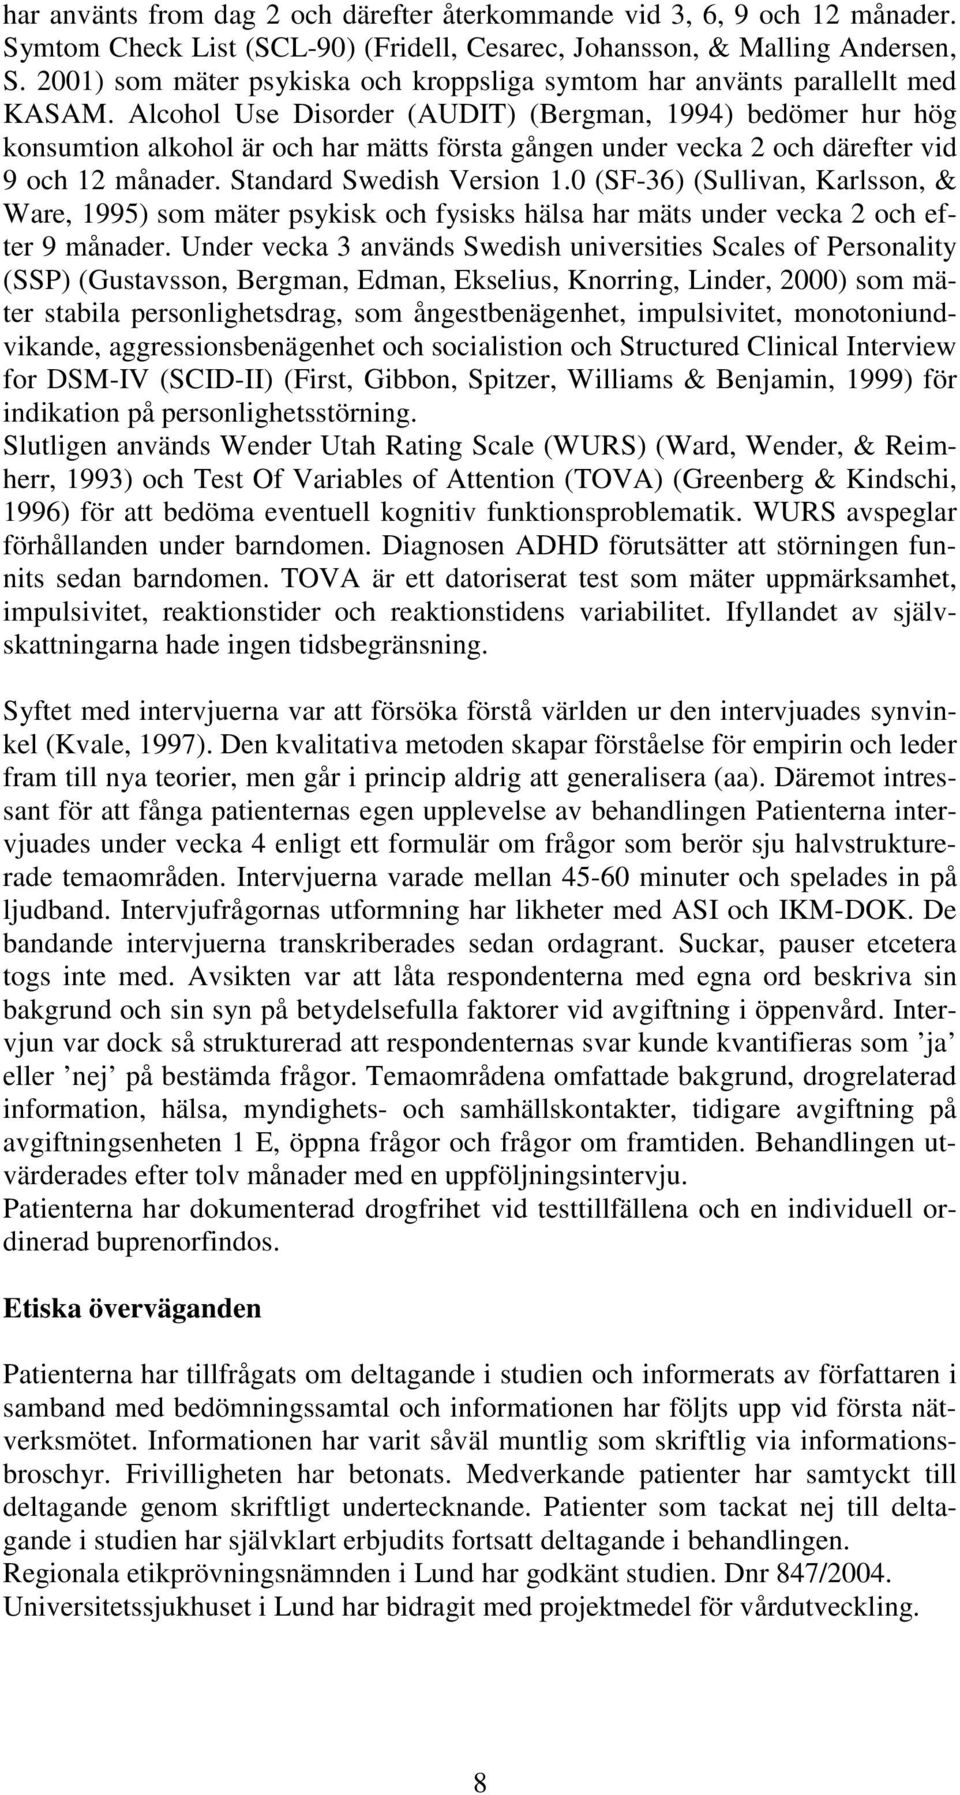 Alcohol Use Disorder (AUDIT) (Bergman, 1994) bedömer hur hög konsumtion alkohol är och har mätts första gången under vecka 2 och därefter vid 9 och 12 månader. Standard Swedish Version 1.